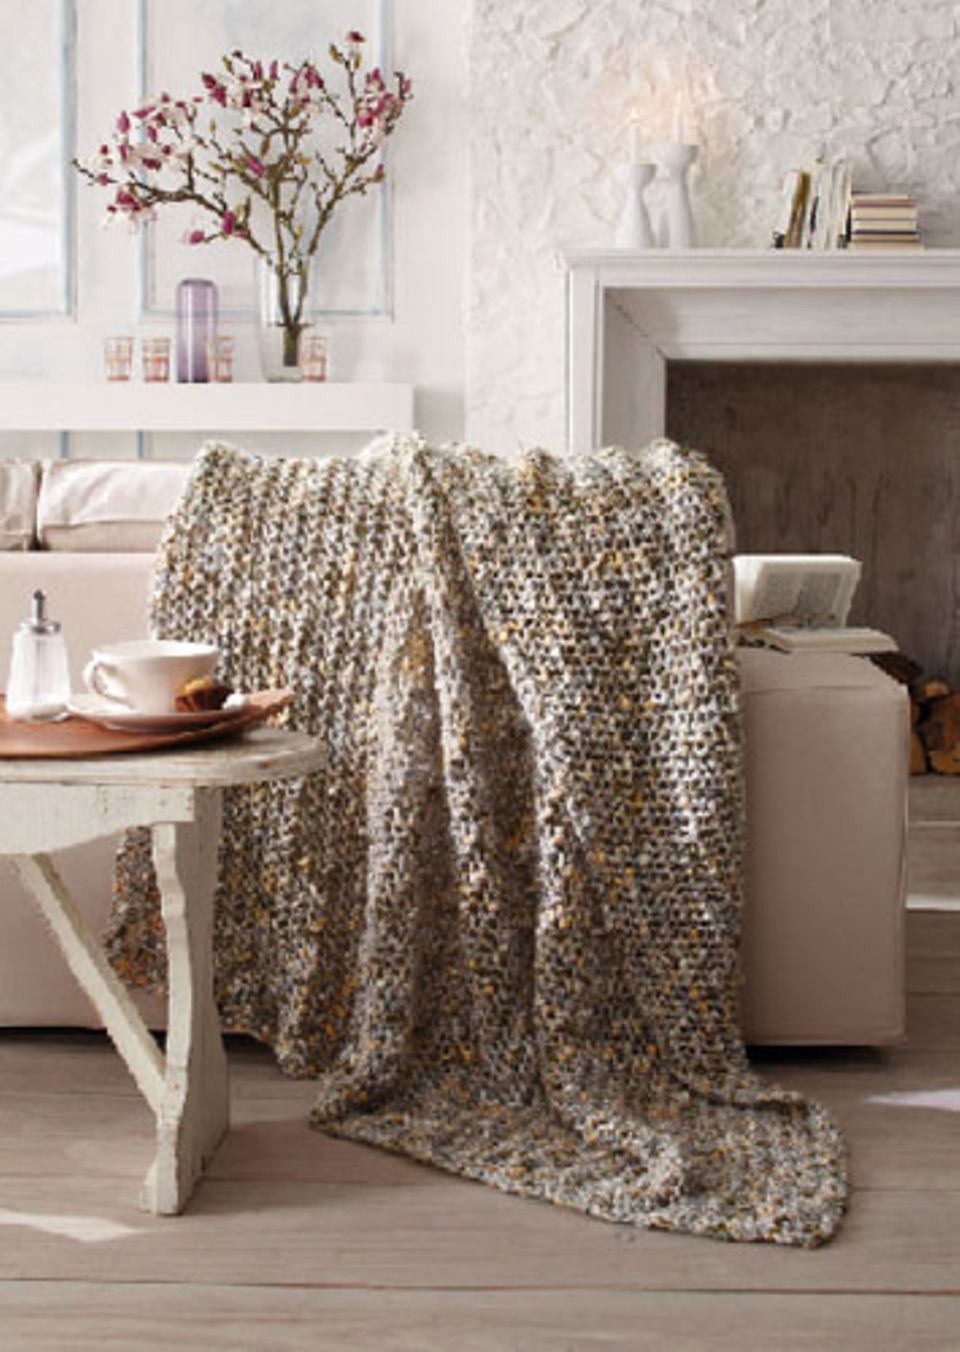 Decke stricken: Einfache Anleitungen für kuschelige Decken